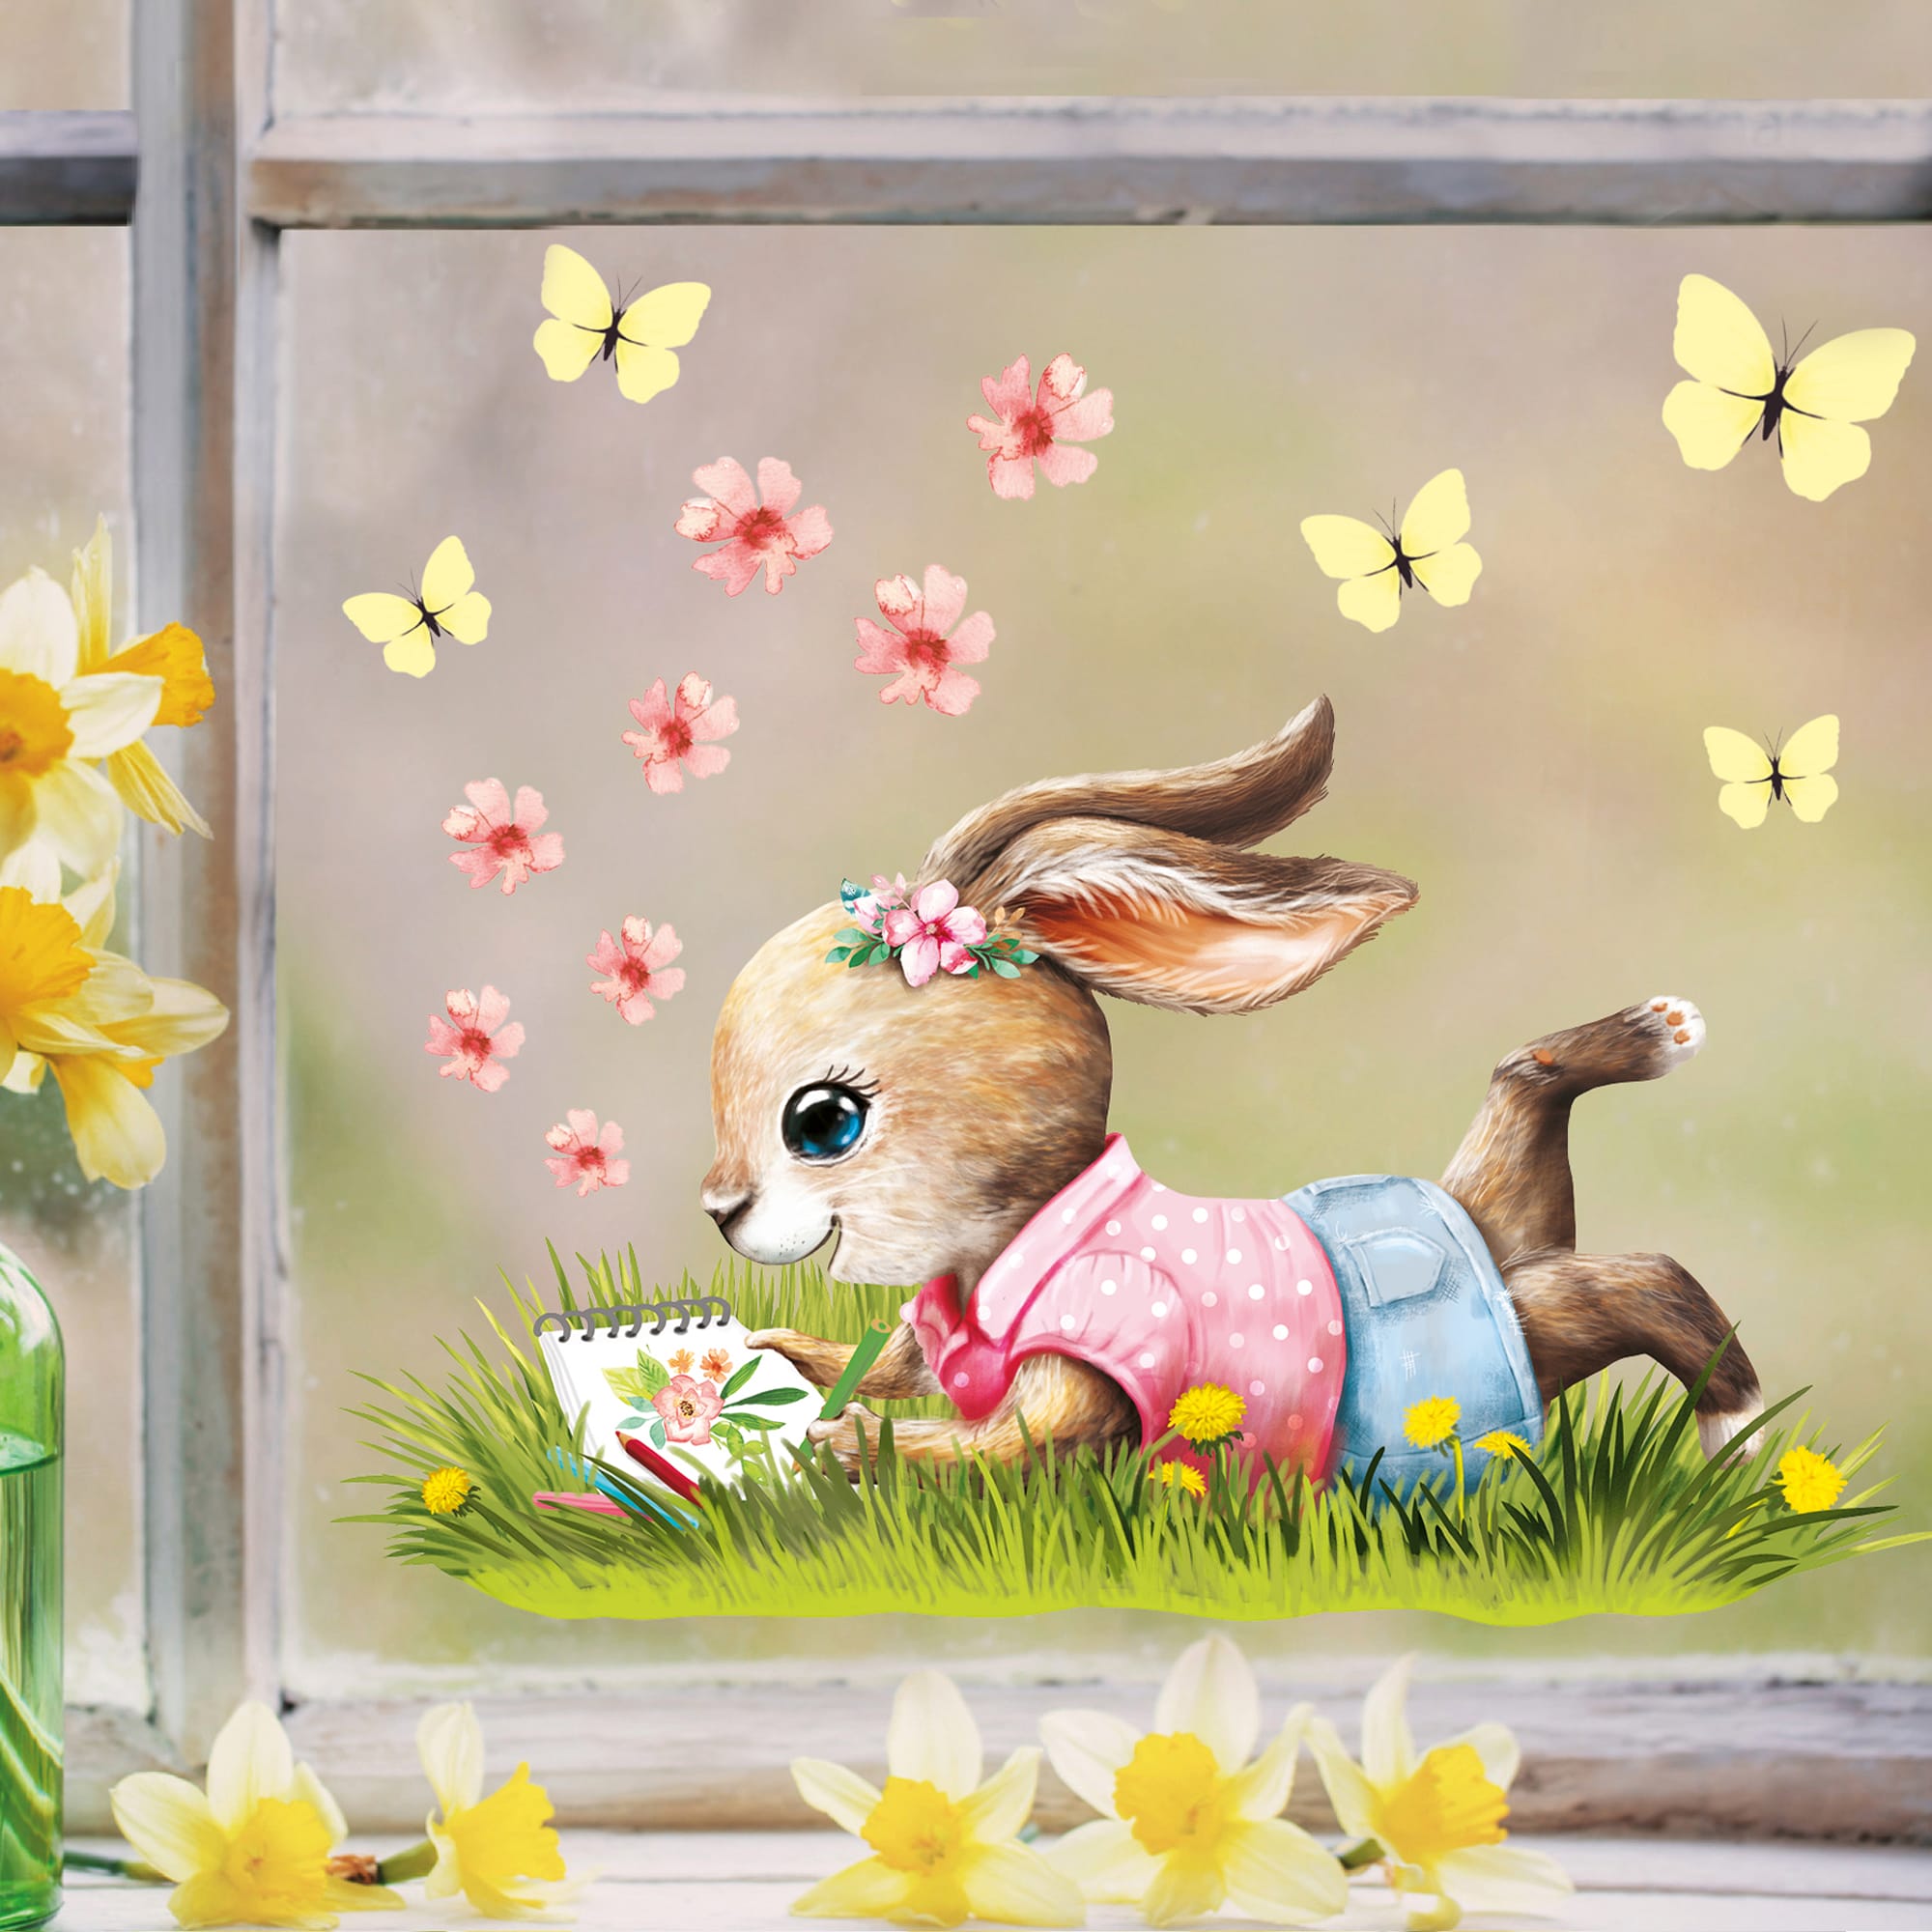 Fensterbild Frühling Ostern Hase Mädchen auf Wiese malt Schmetterlinge Blüten Fensterdeko Kinderzimmer Kind, Frühlingdeko, Osterdeko